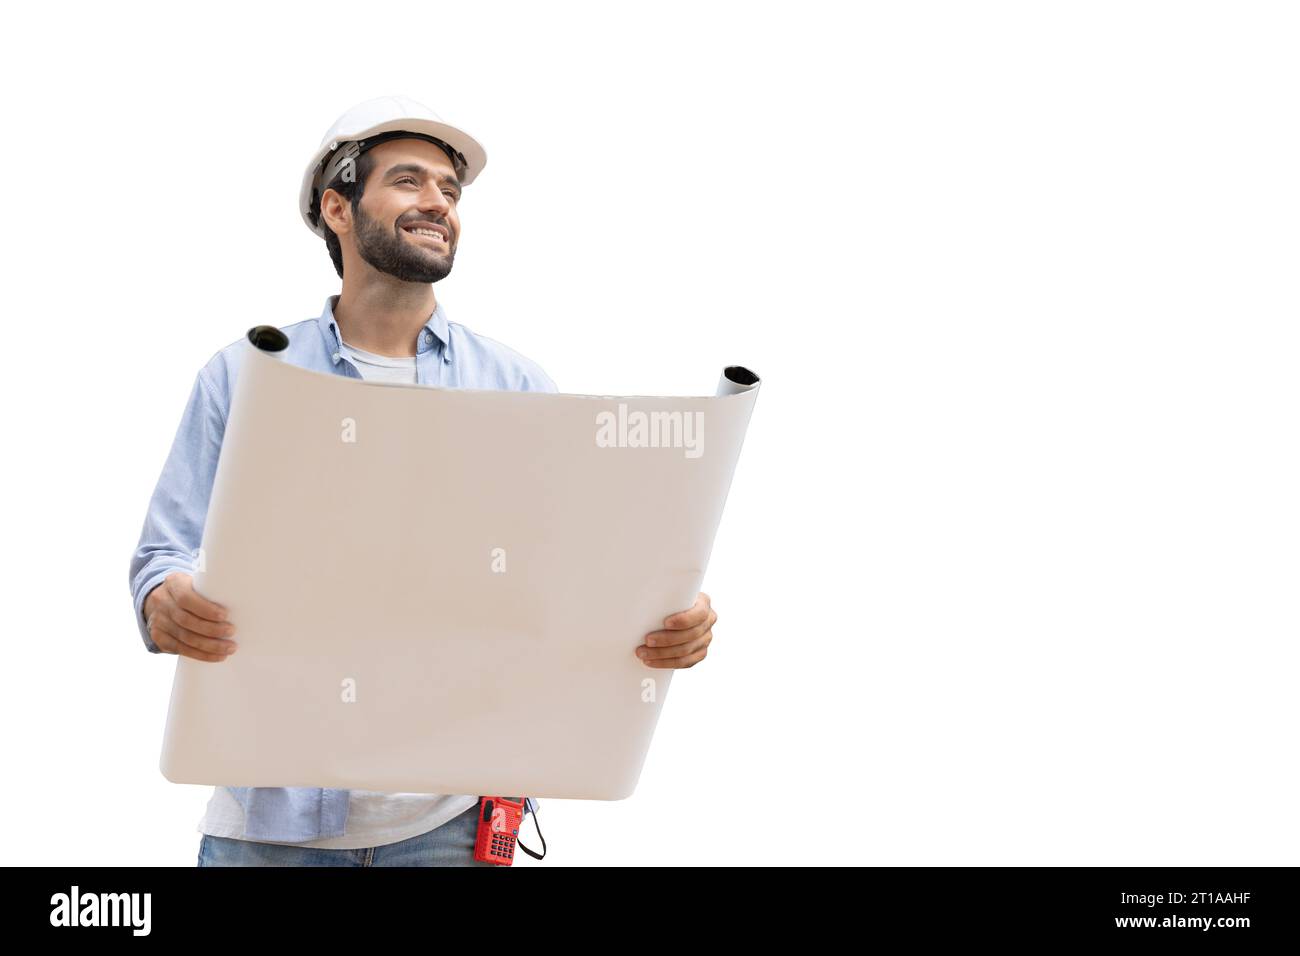 Ispanico indiano felice operaio edile ingegnere costruttore forman architetto progettista con carta pianta isolata su sfondo bianco Foto Stock